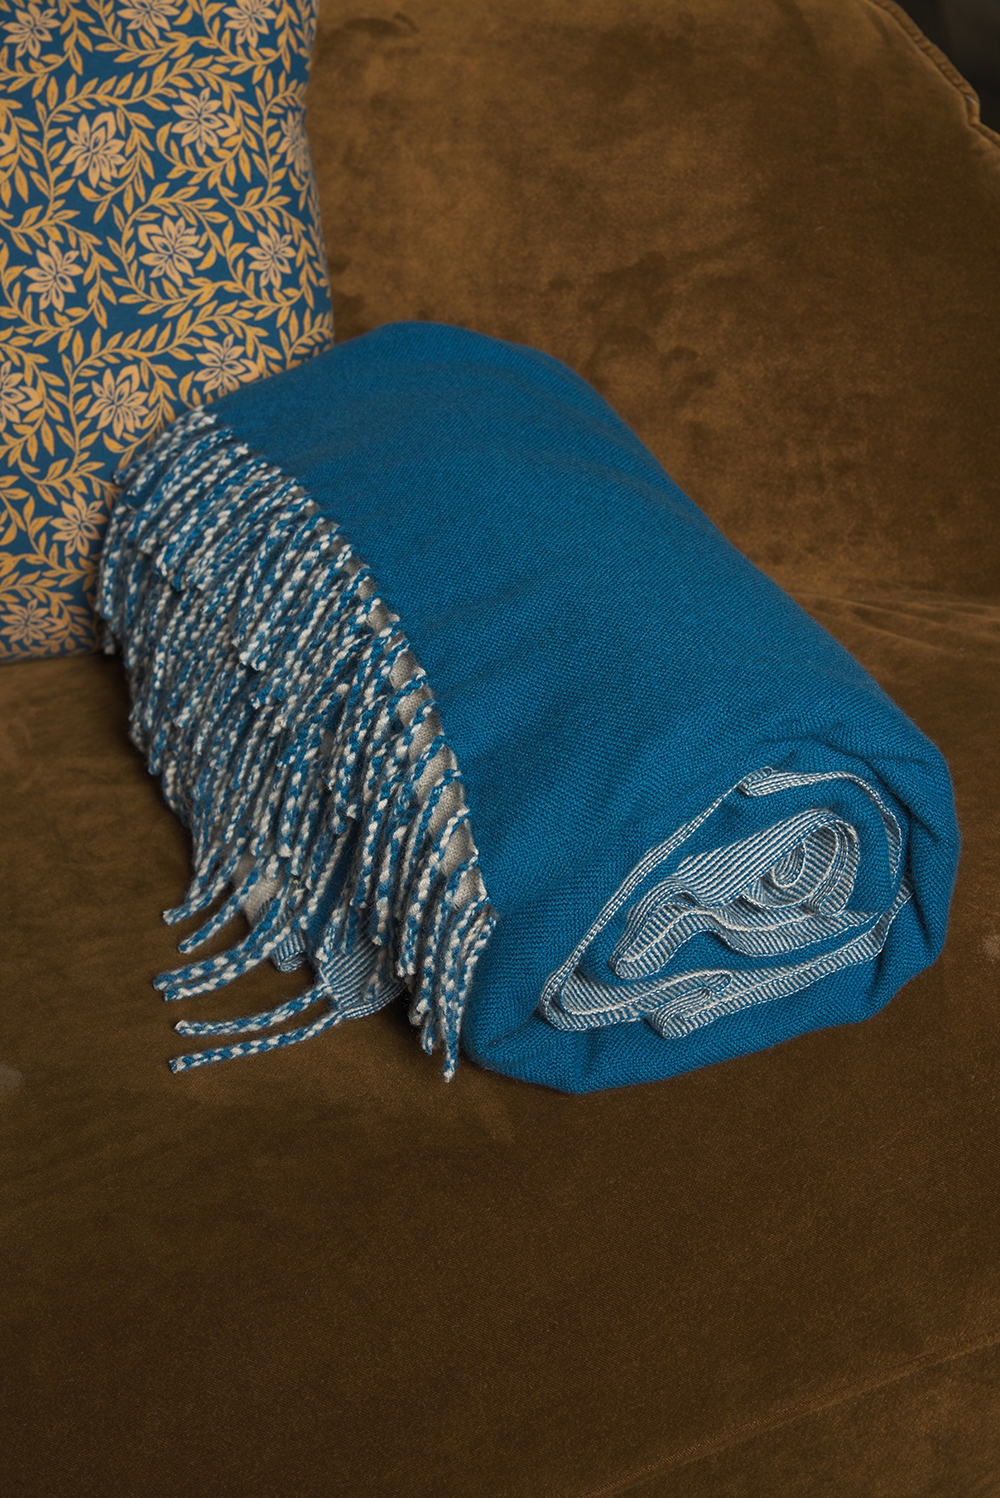 Cashmere accessories blanket amadora 140 x 220 canard blue vintage beige chine 140 x 220 cm